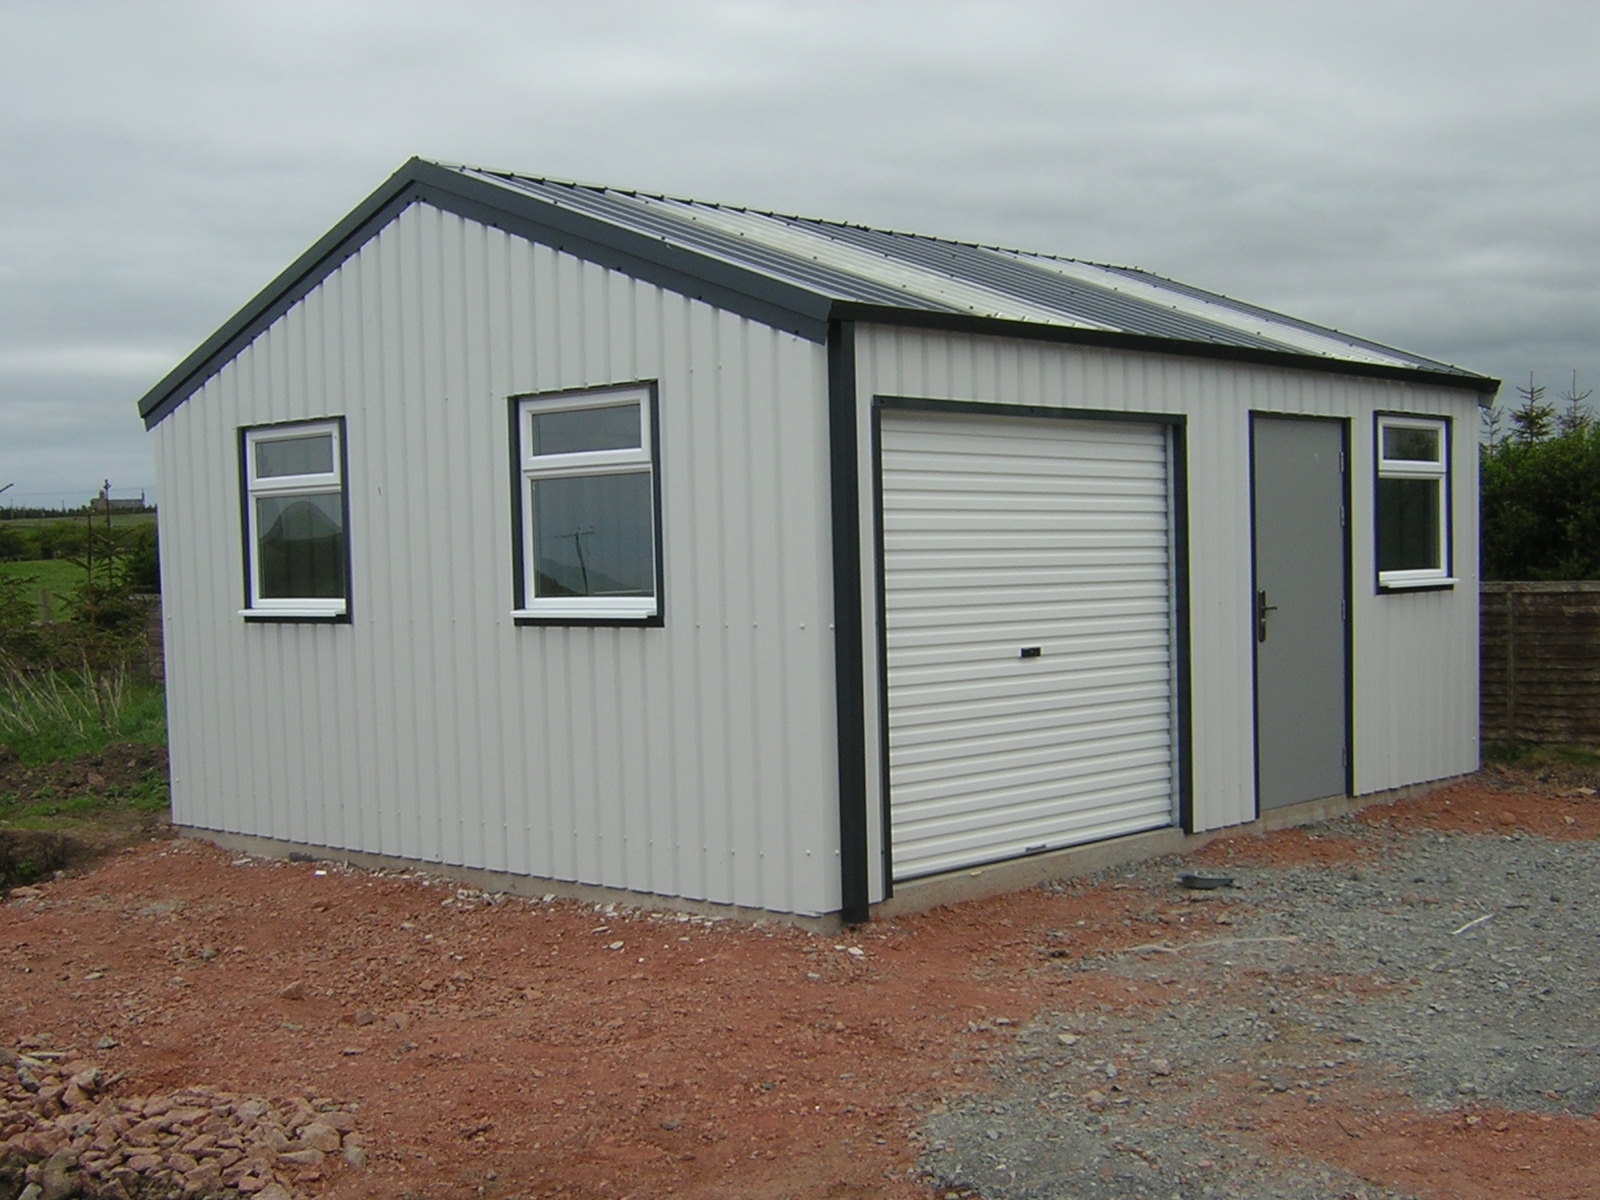 Bespoke Steel Buildings For Domestic Workshops In Cornwall